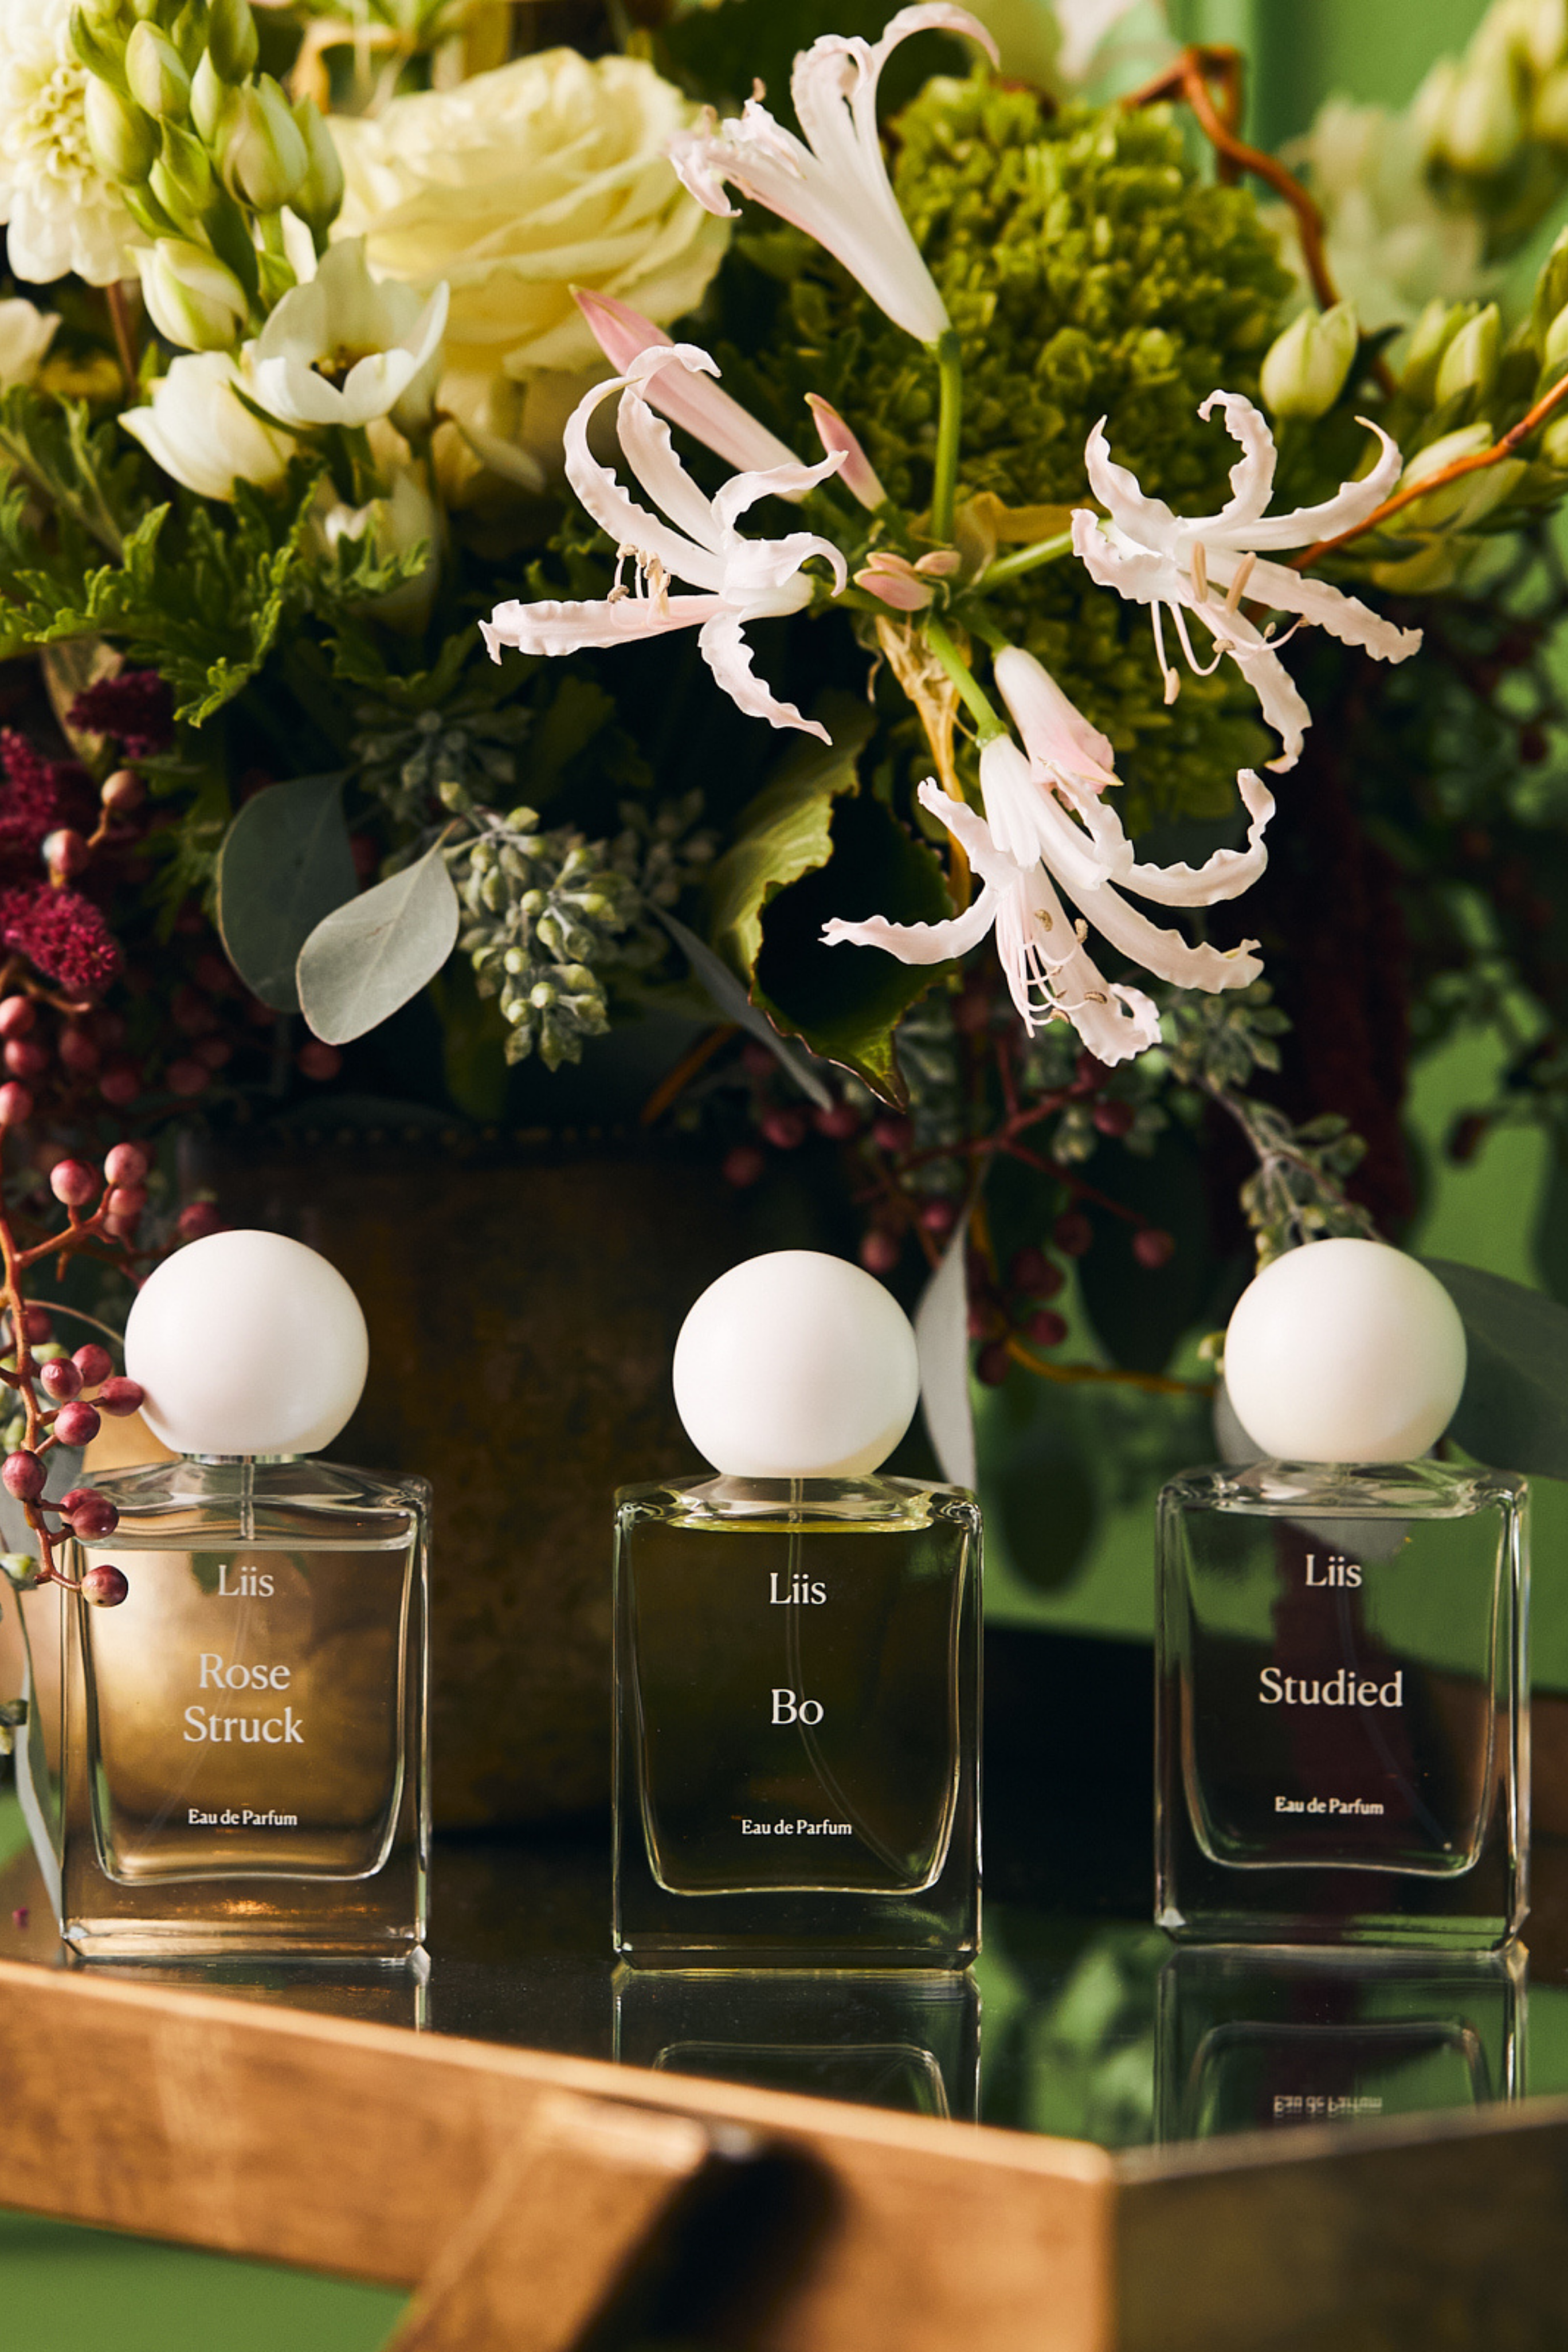 Liis Fragrance Studied Eau de Parfum